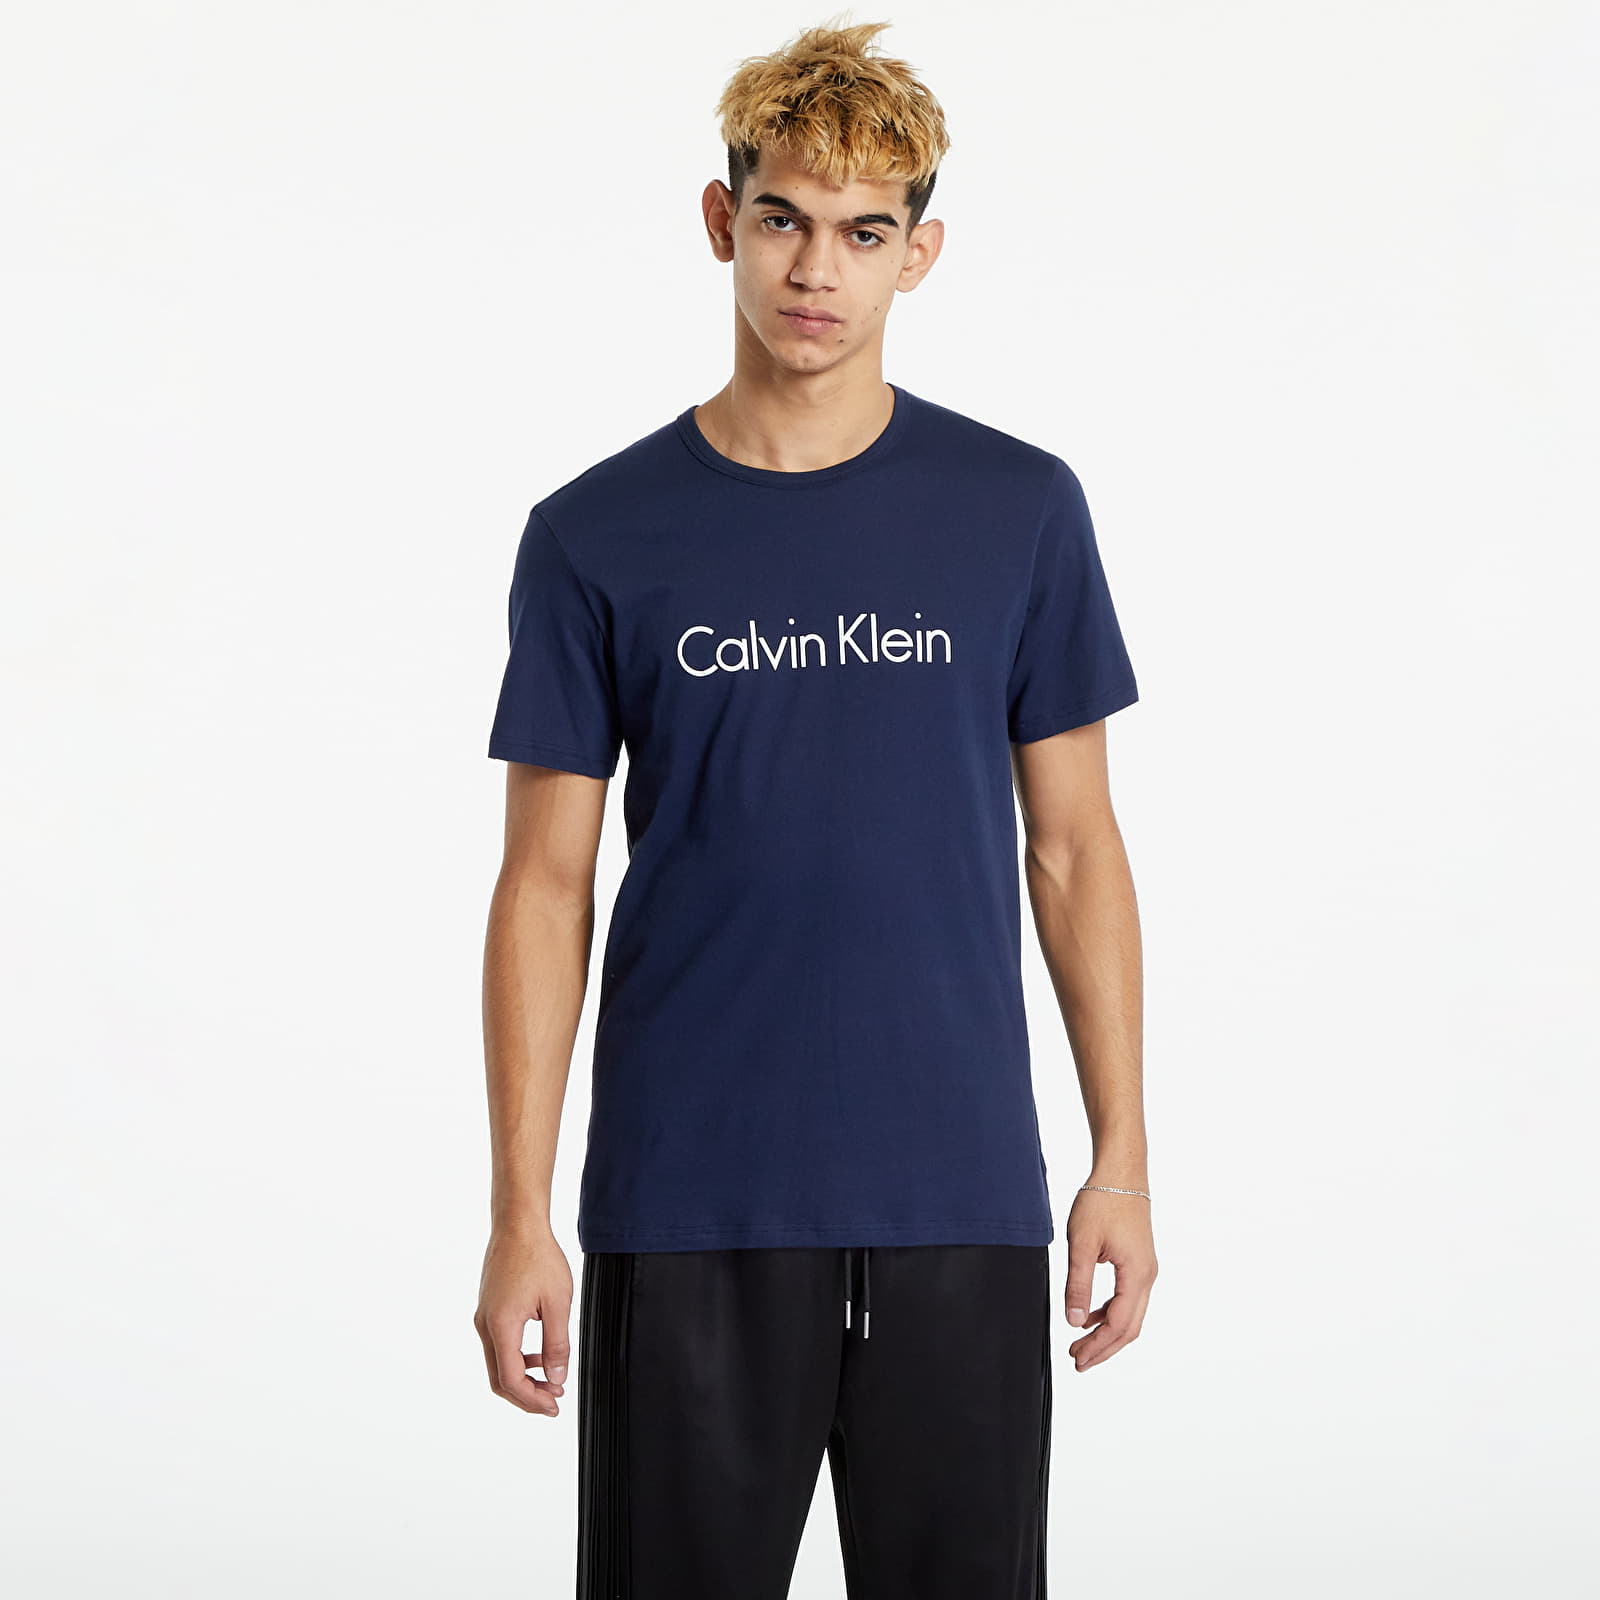 Trička Calvin Klein Calvin Klein Graphic Tee Navy